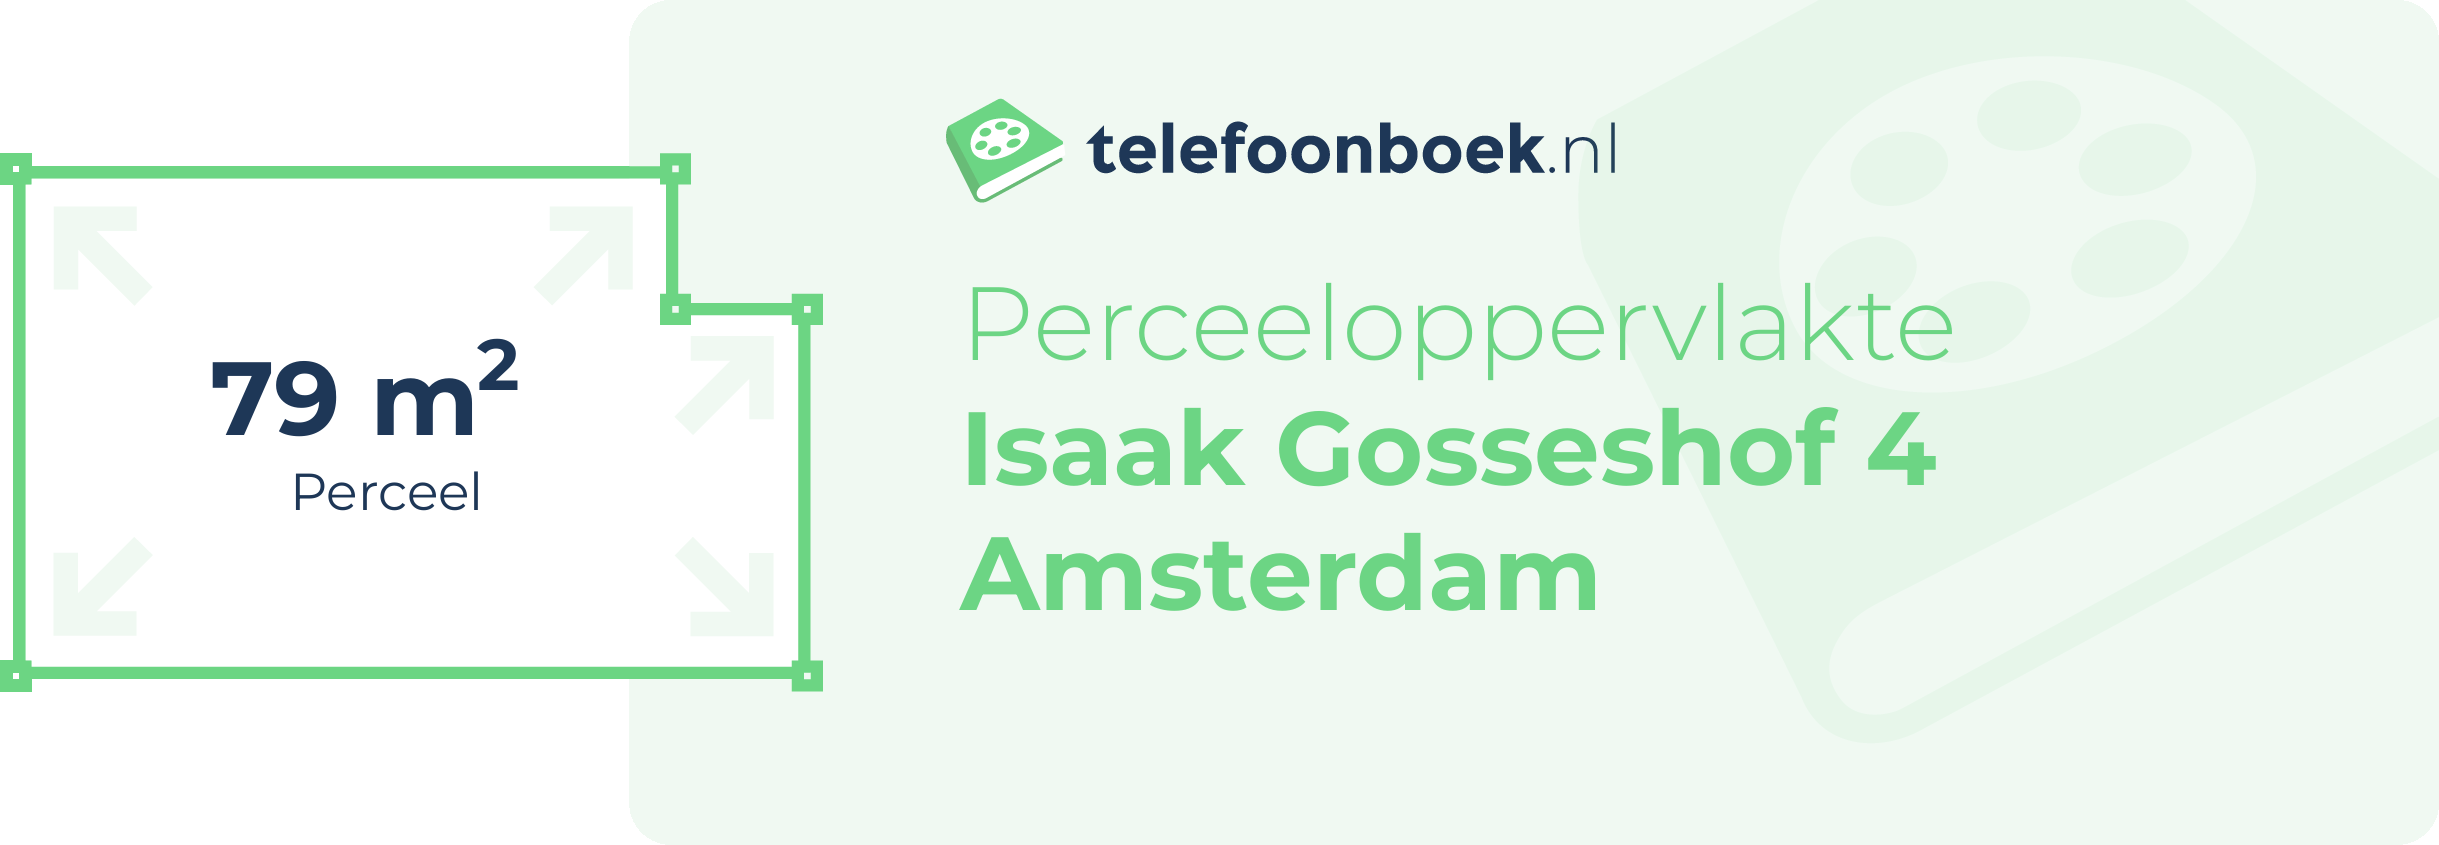 Perceeloppervlakte Isaak Gosseshof 4 Amsterdam